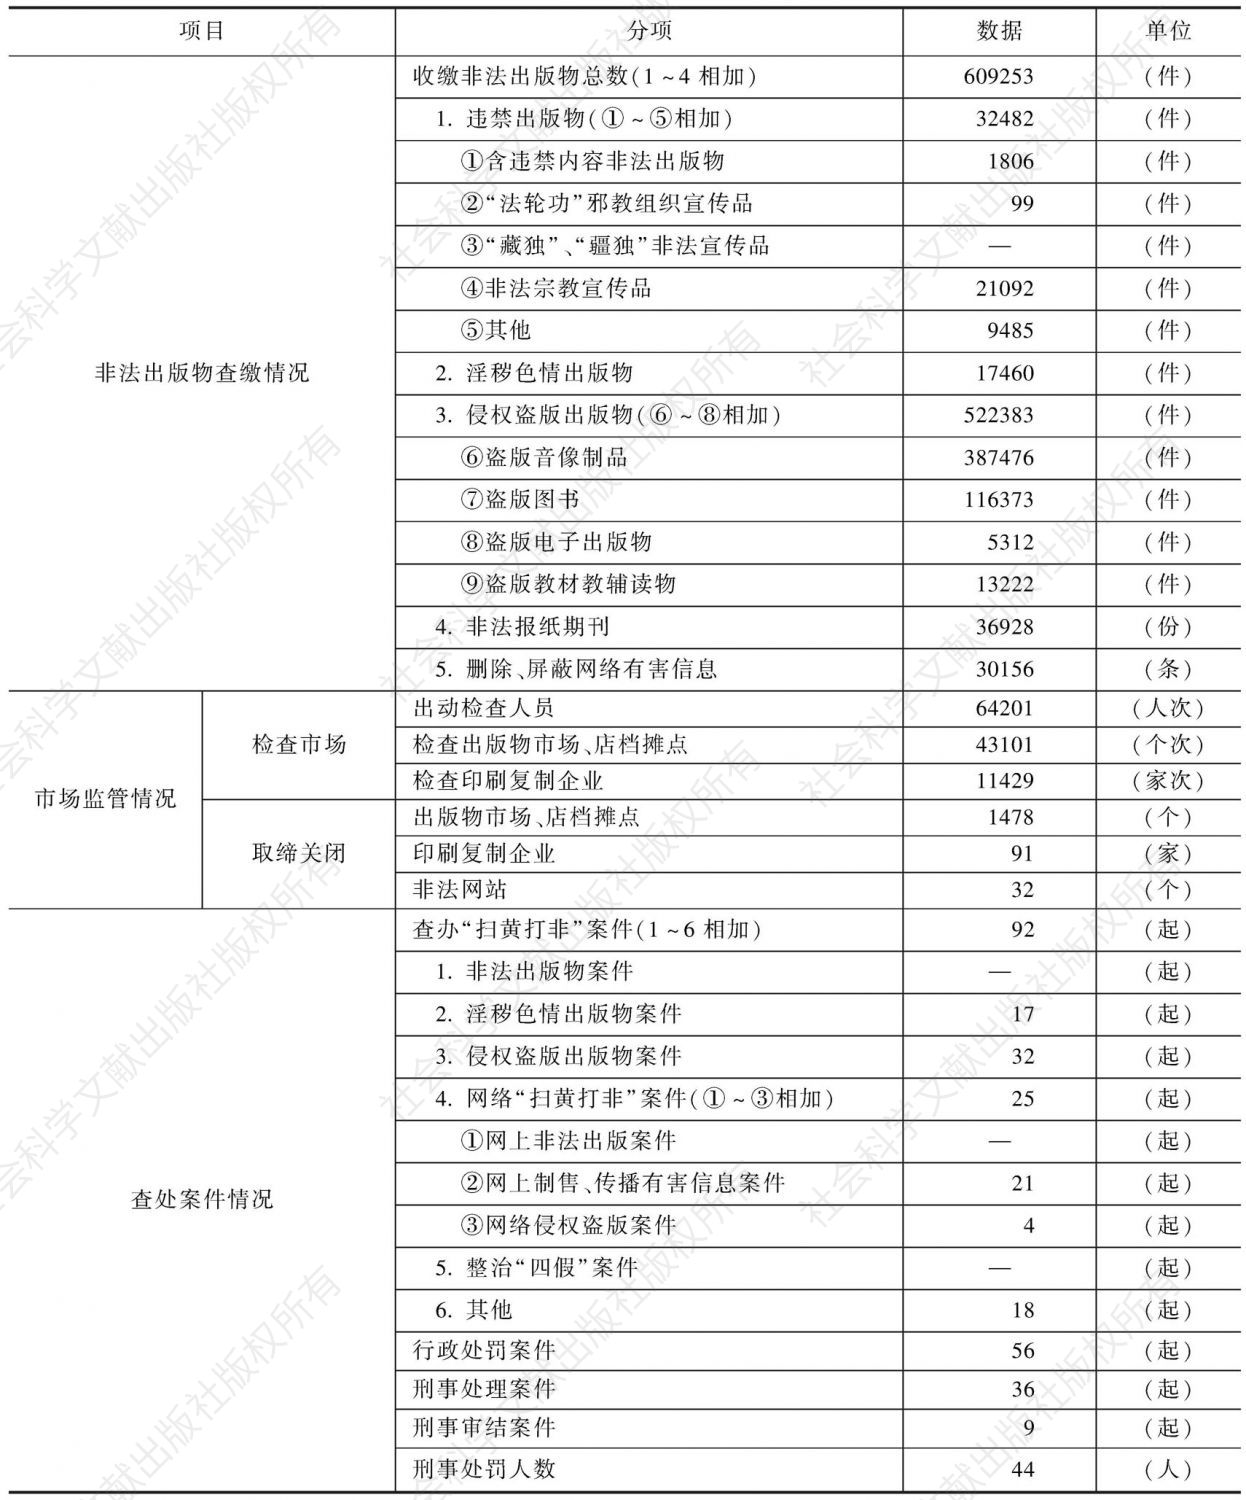 2010年福建省“扫黄打非”工作成果统计表